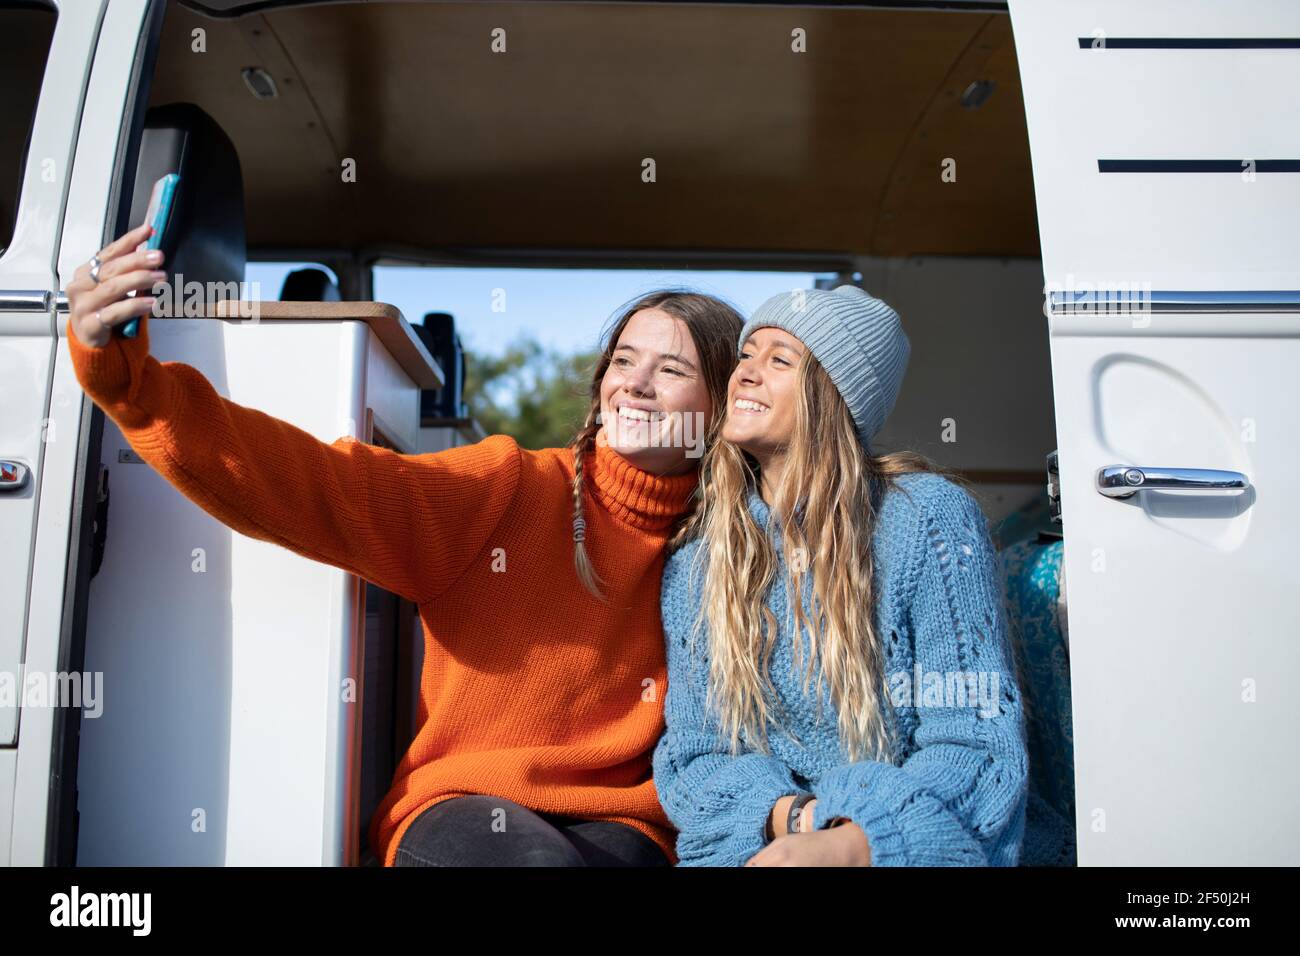 Happy young women friends taking selfie in camper van doorway Stock Photo